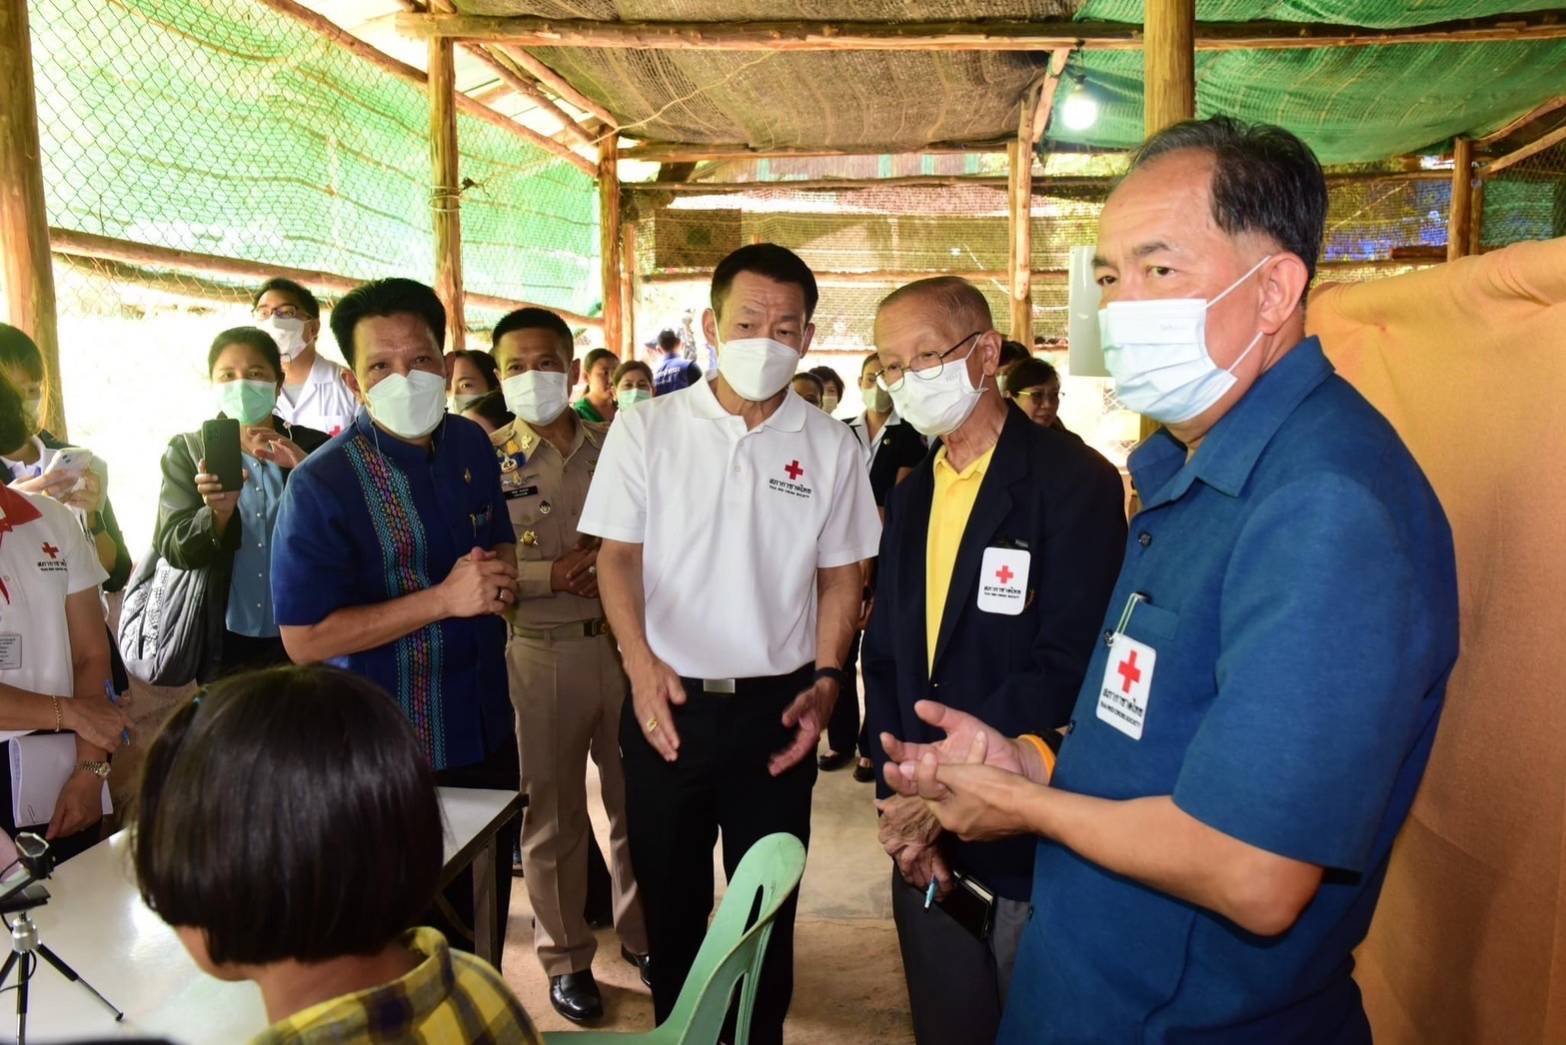 สภากาชาดไทย รุกฉีดวัคซีน HPV ป้องกัน มะเร็งปากมดลูก ให้เด็กในค่ายผู้ลี้ภัย จ.ราชบุรี 